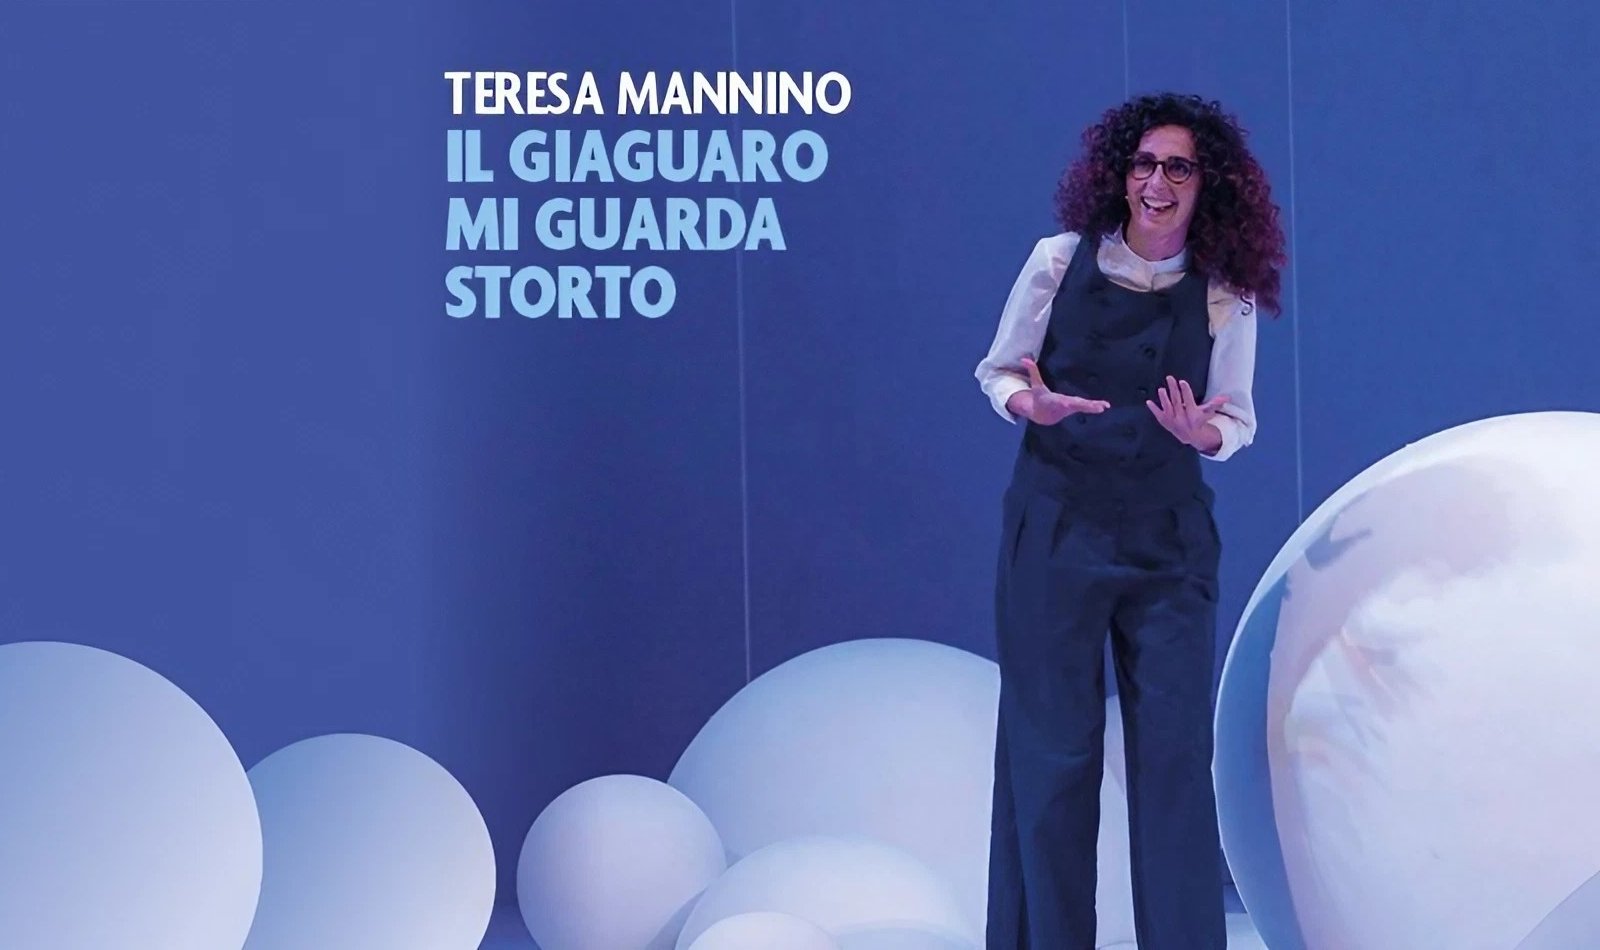 Шоу Терезы Маннино в Неаполе